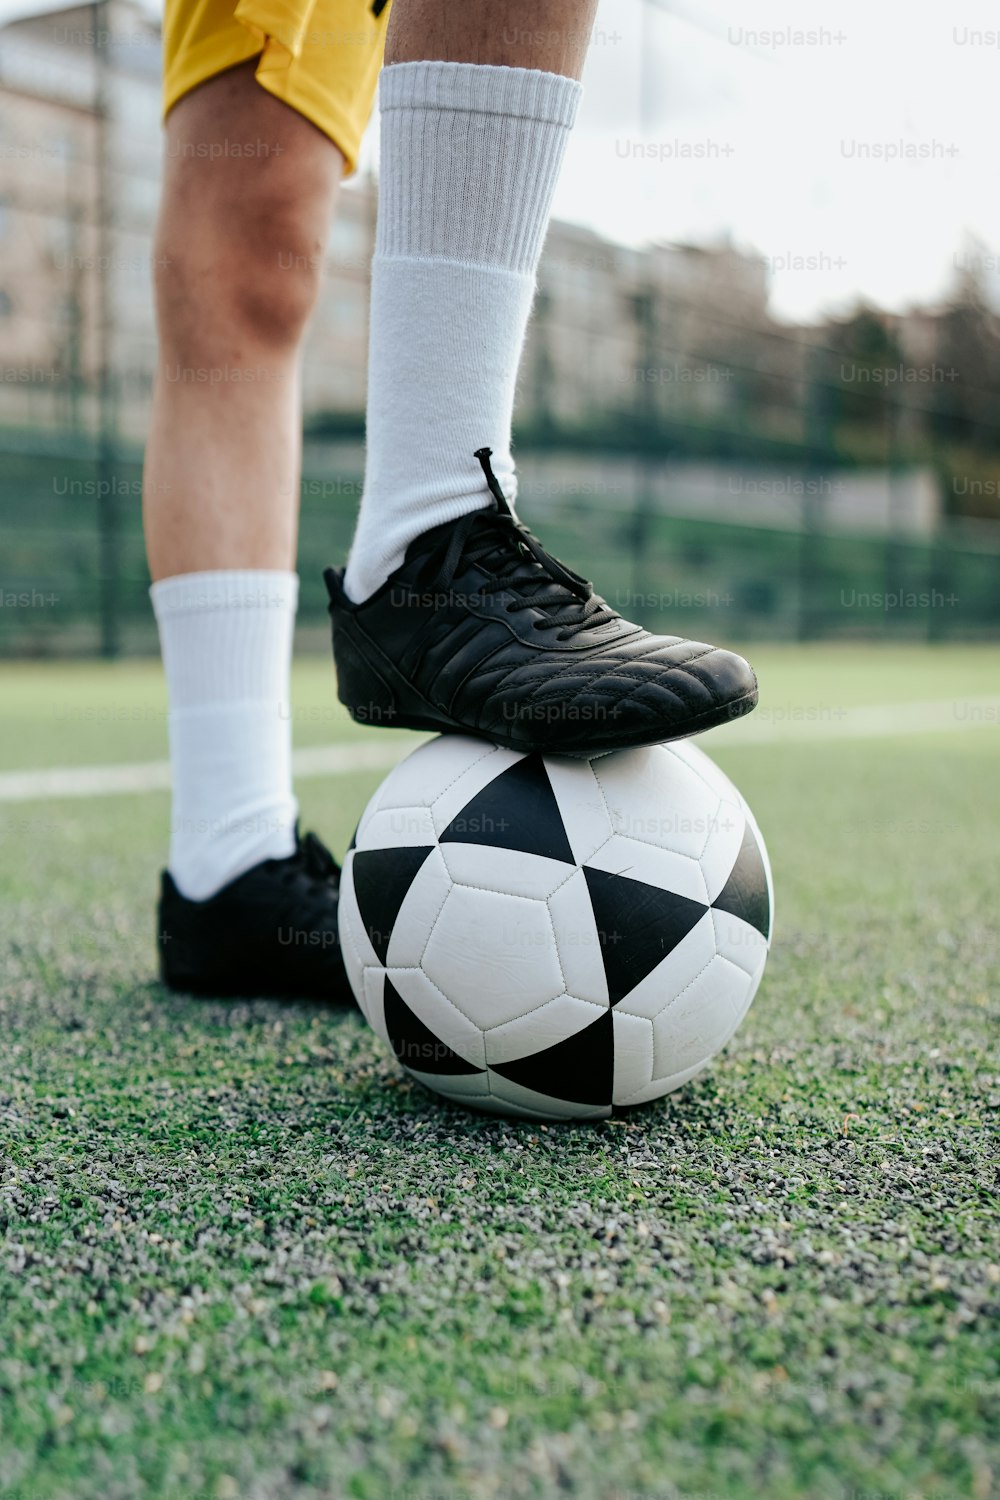 Un jugador de fútbol está parado sobre un balón de fútbol